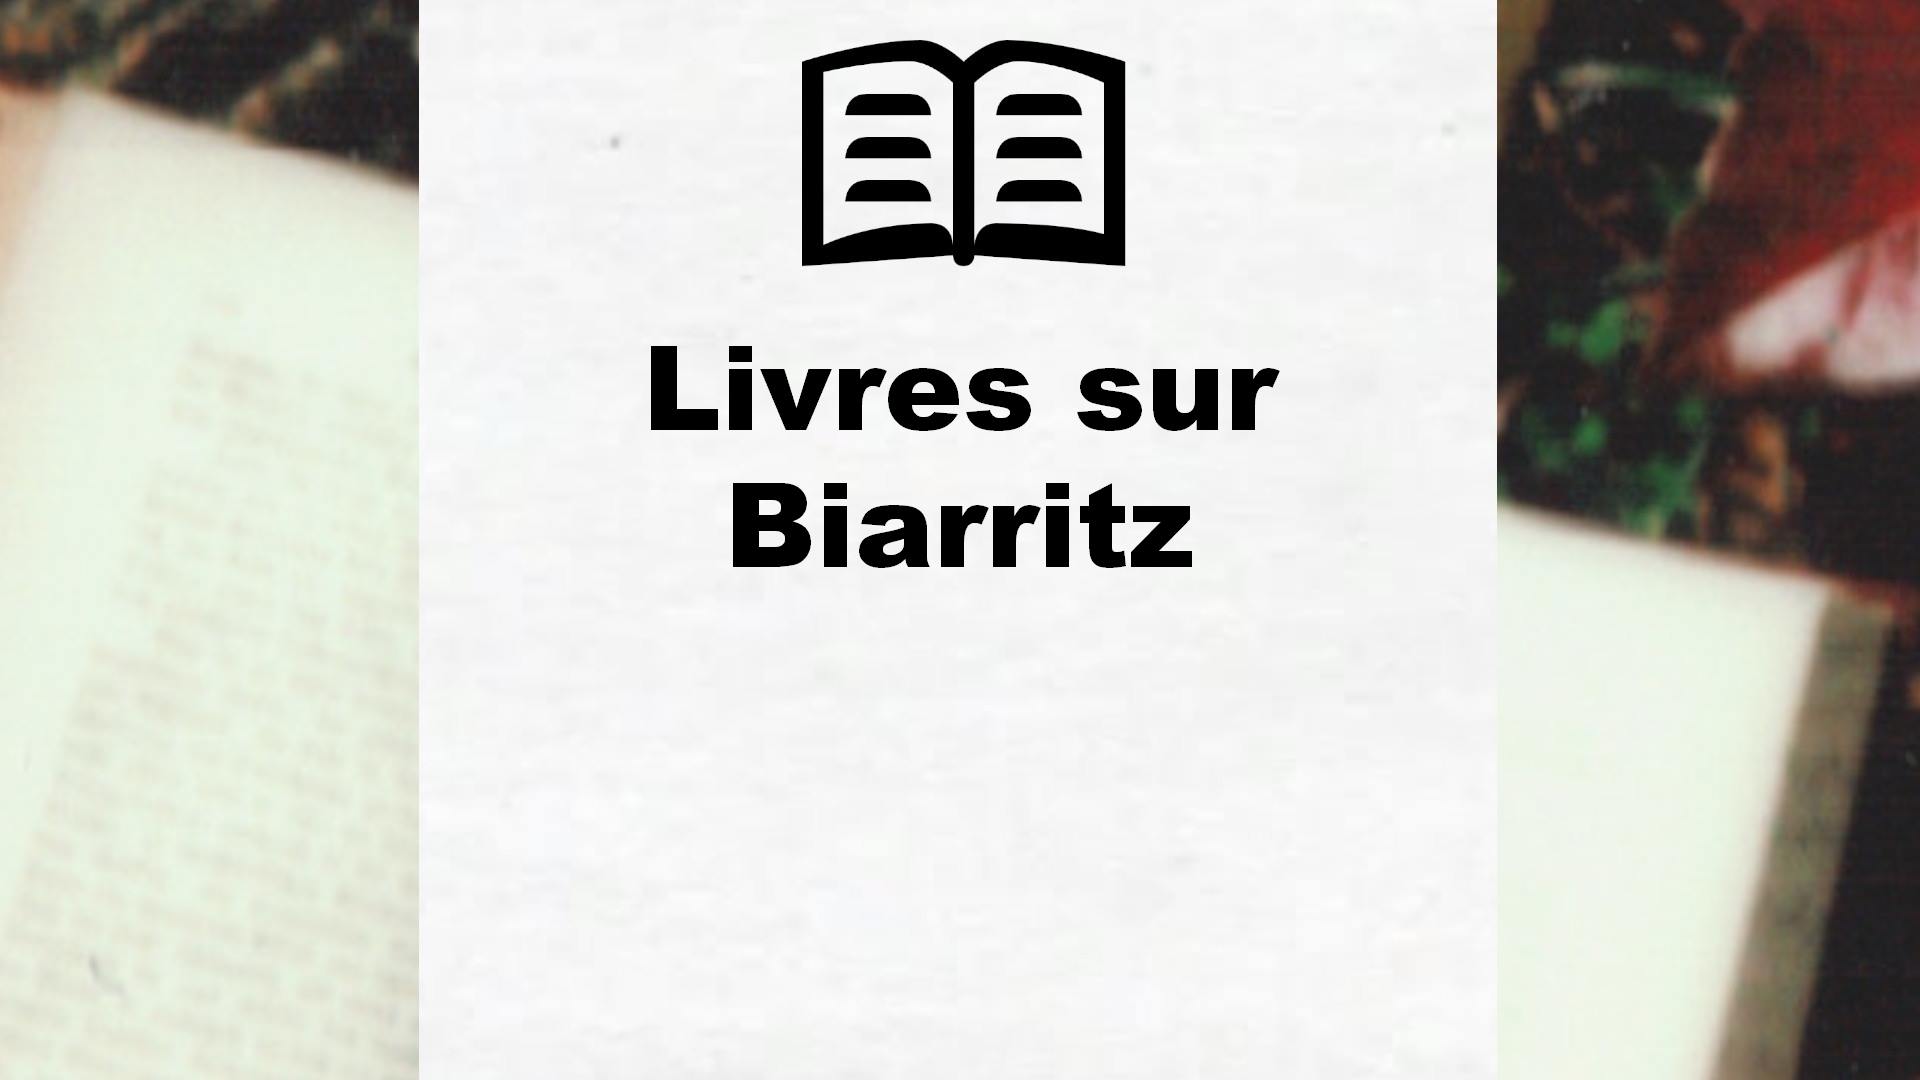 Livres sur Biarritz